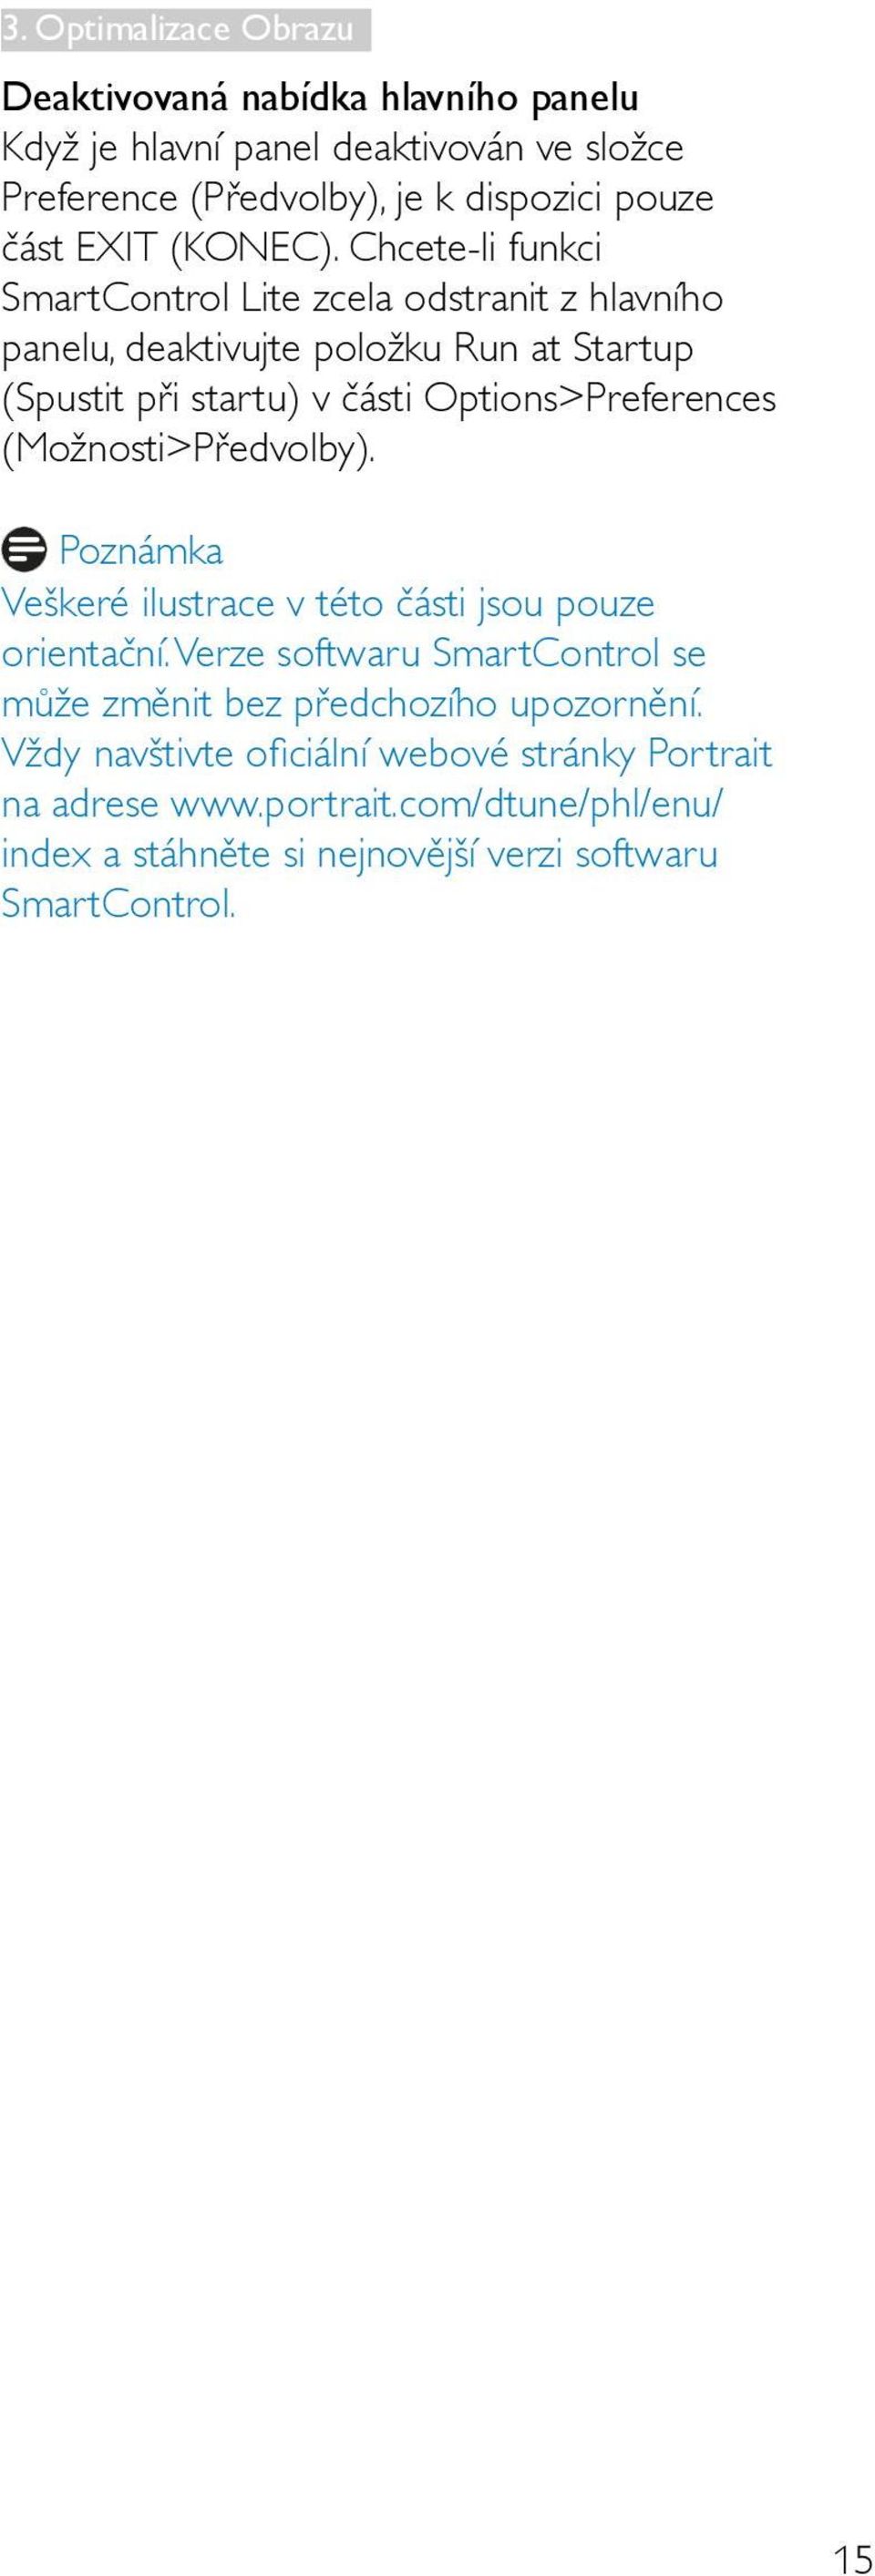 Chcete-li funkci SmartControl Lite zcela odstranit z hlavního panelu, deaktivujte položku Run at Startup (Spustit při startu) v části Options>Preferences